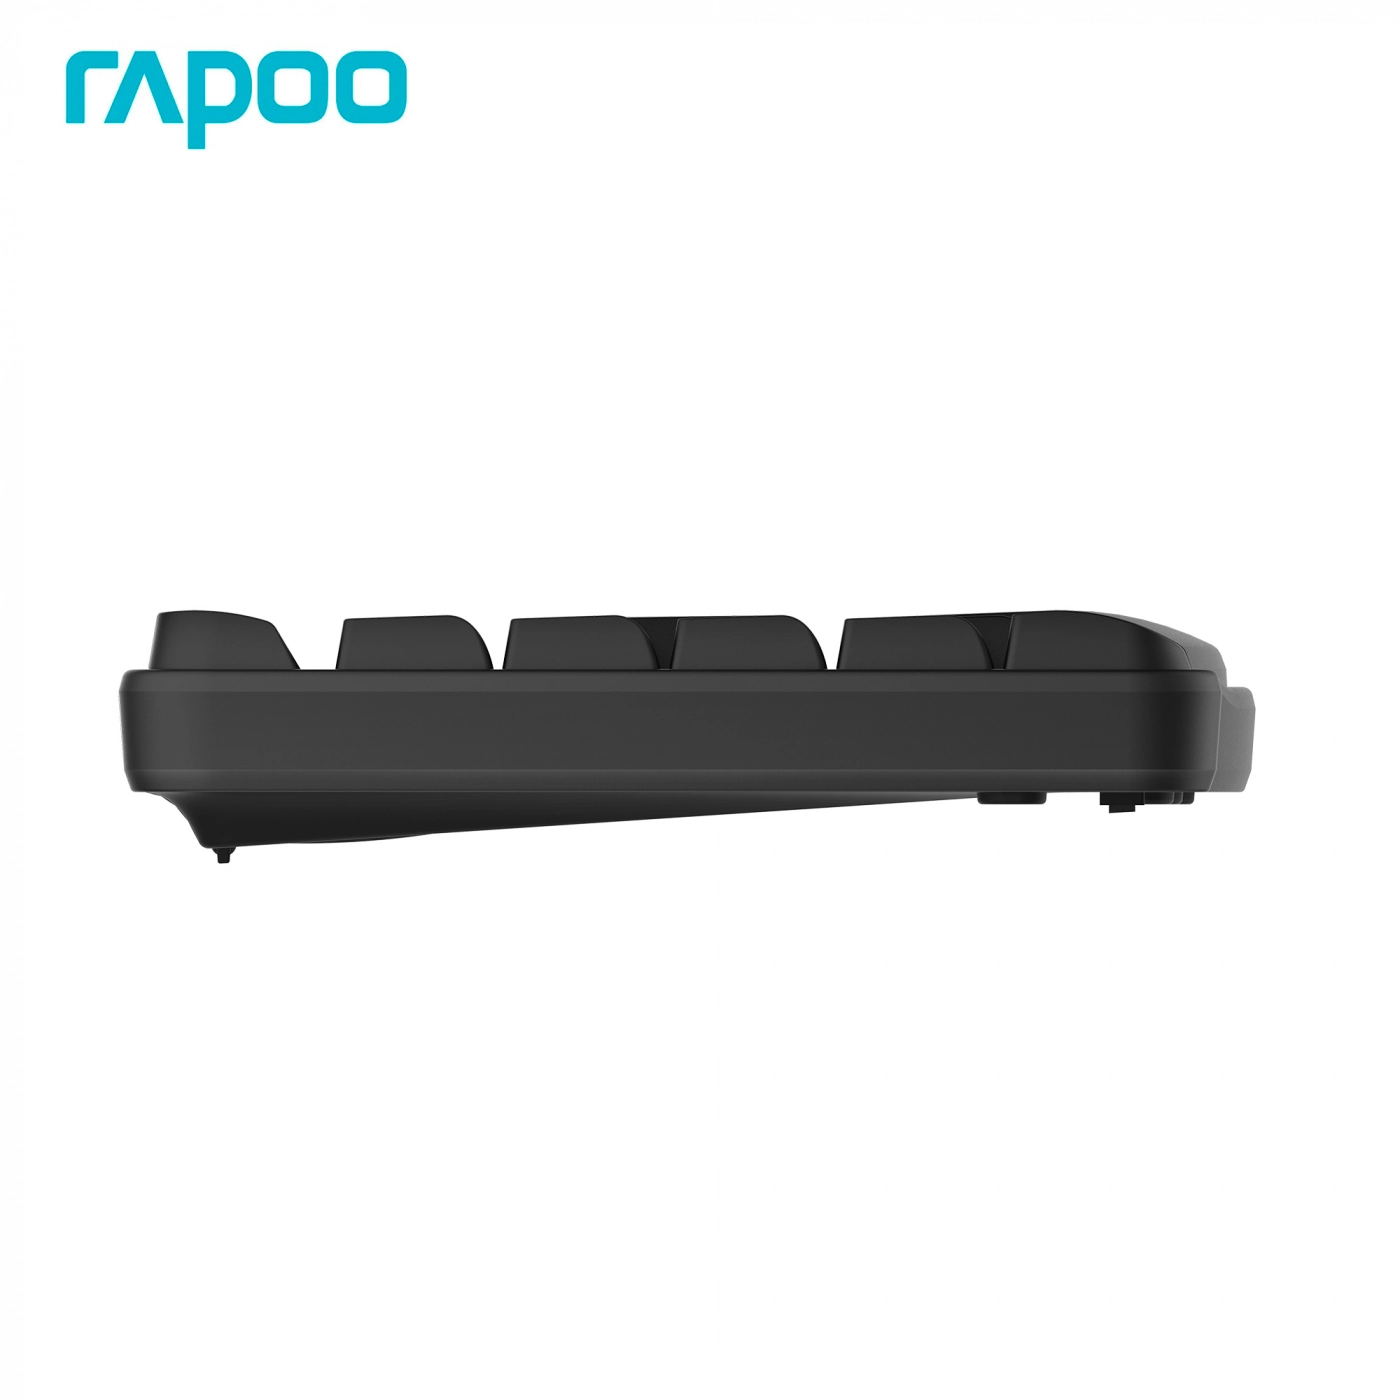 Купить Комплект клавиатура+мышь Rapoo X1800S Black - фото 4